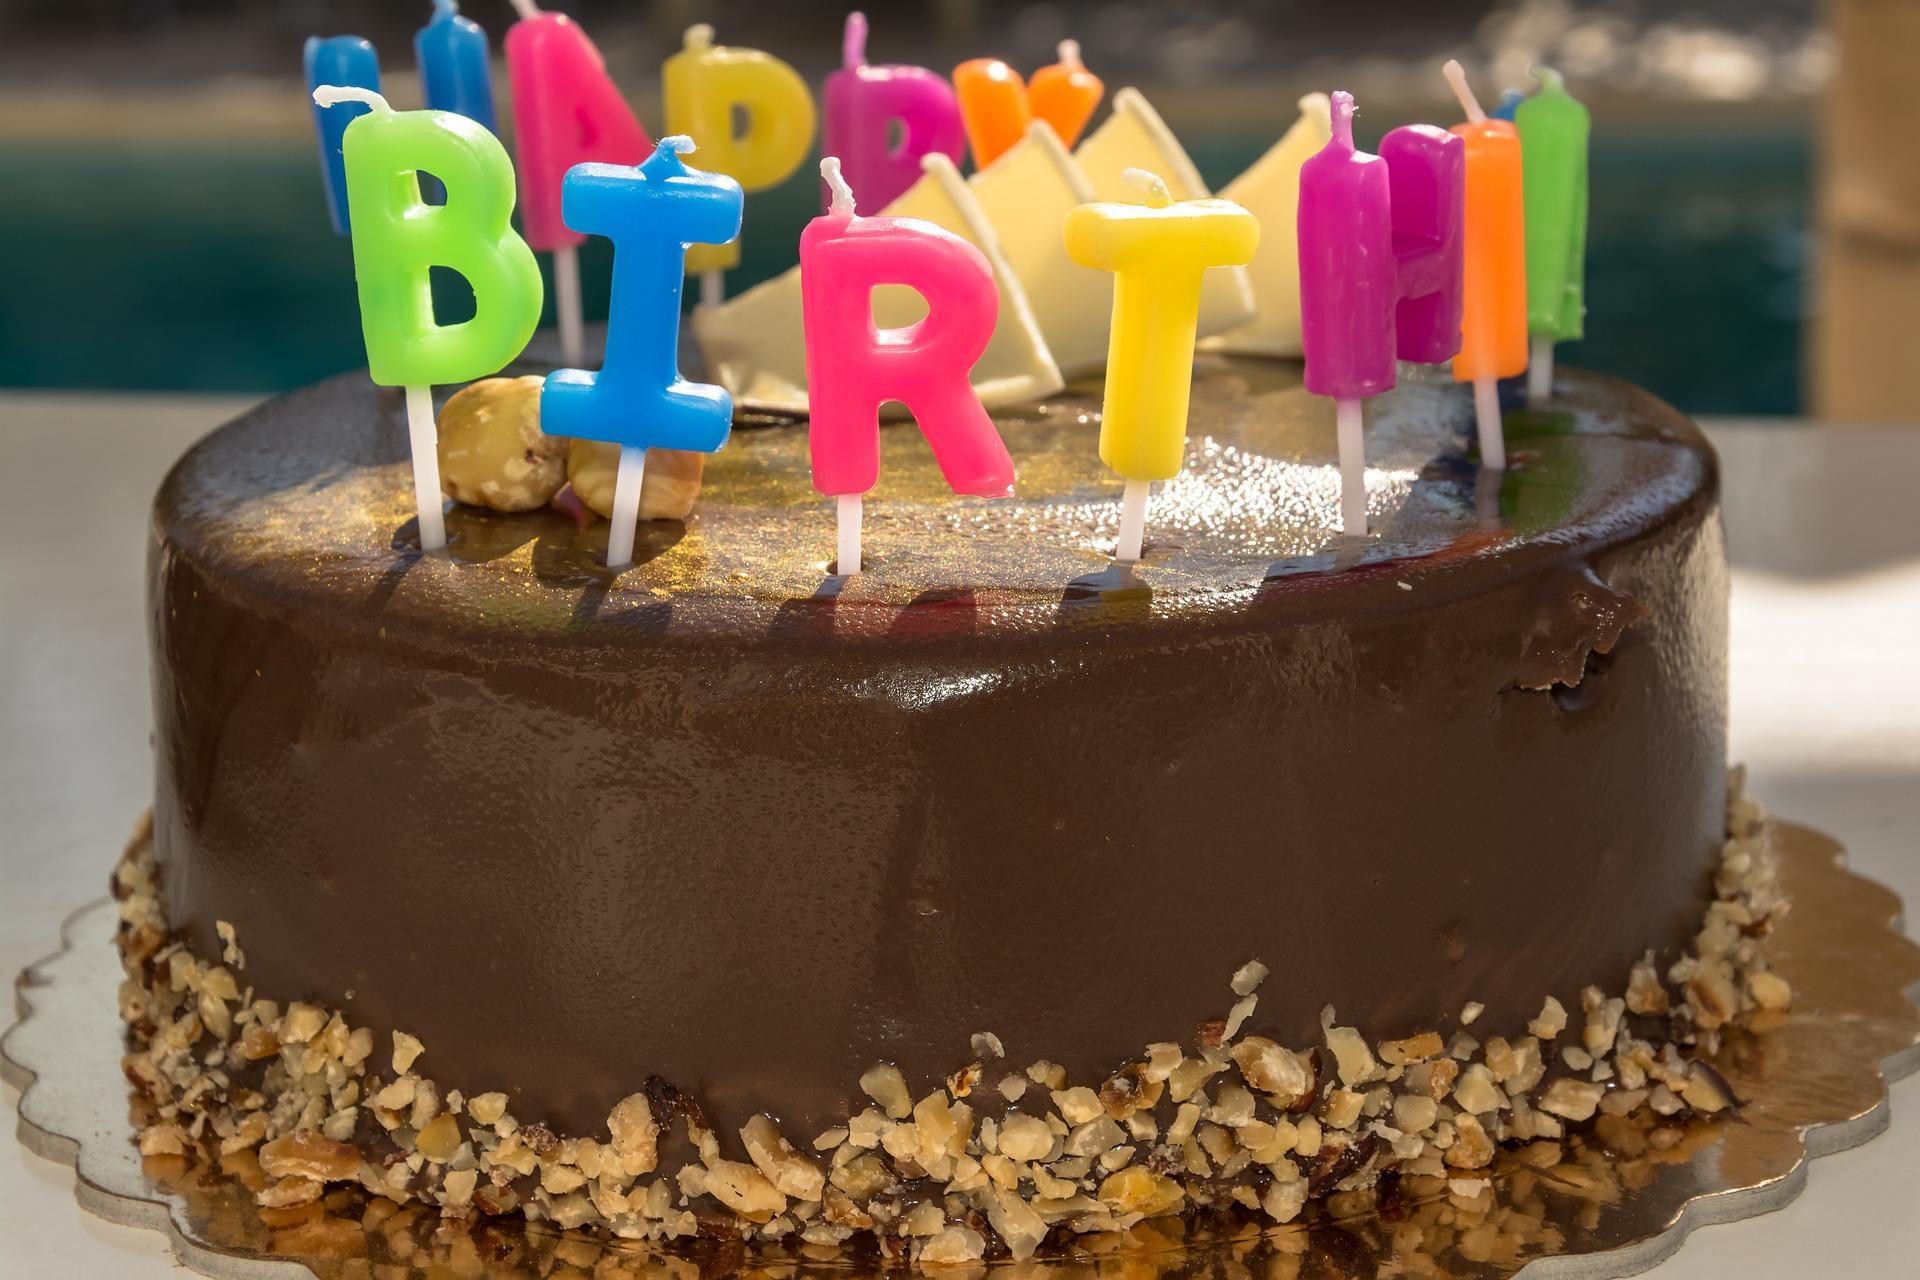 Gambar Selamat Ulang Tahun Kue For Android Apk Download